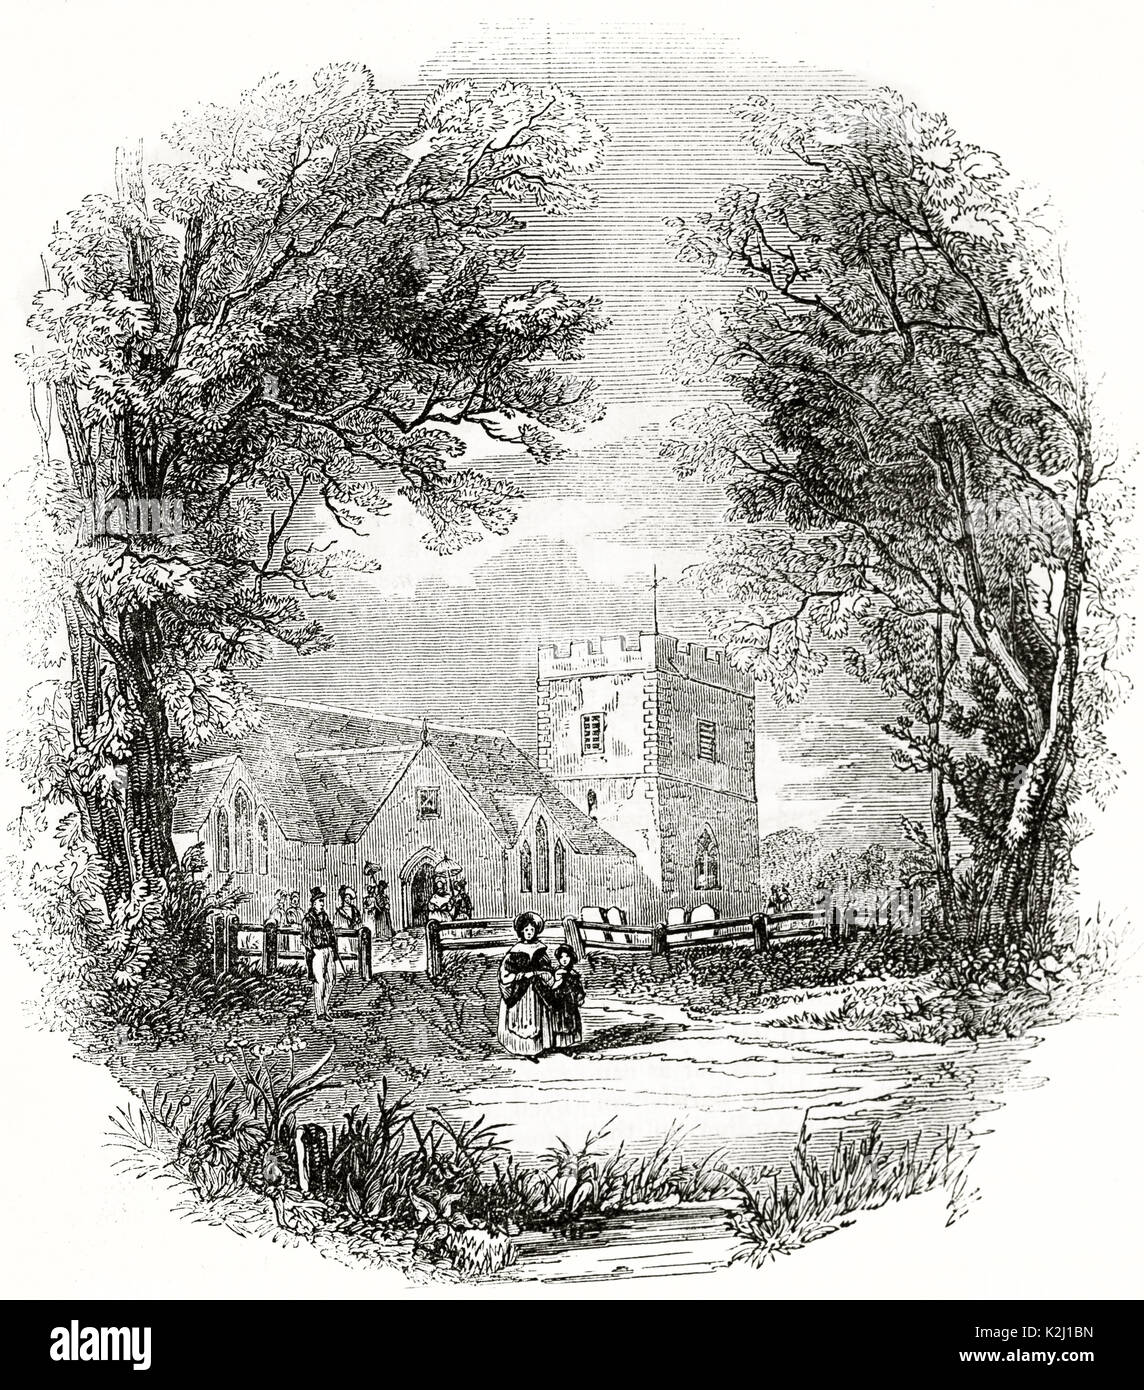 Alte Ansicht von Johannes der Täufer Kirche, Boldre, England. Durch unidentifilife boated Autor Penny Magazine, London, 1835 veröffentlicht. Stockfoto